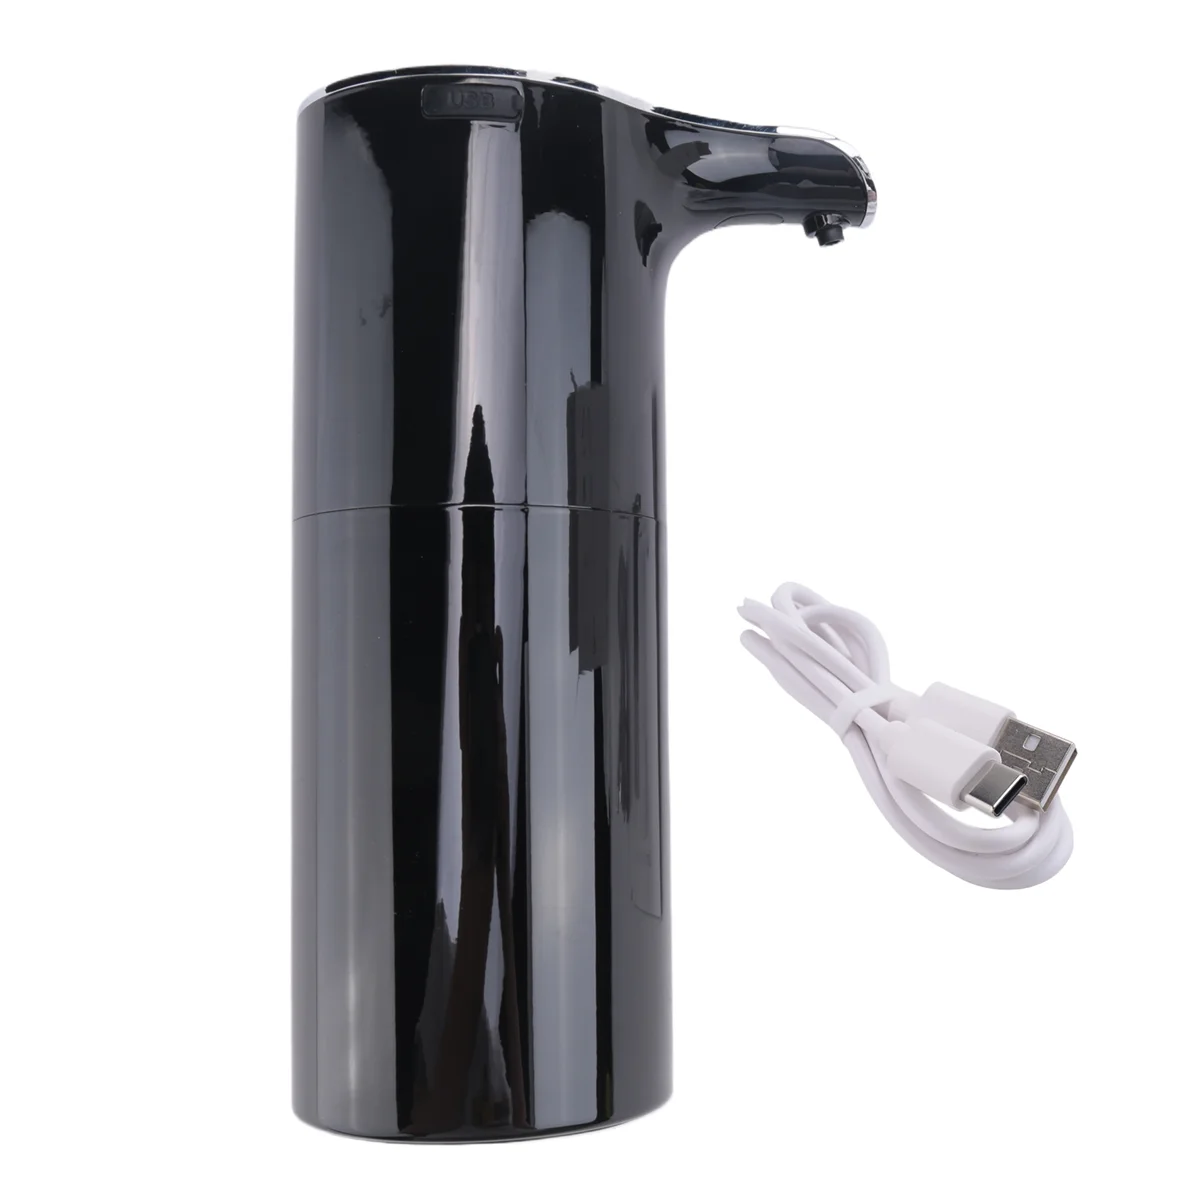 

Диспенсер для мыла из пены, Автоматический Бесконтактный дозатор мыла, USB, перезаряжаемый, цвет черный, 450 мл